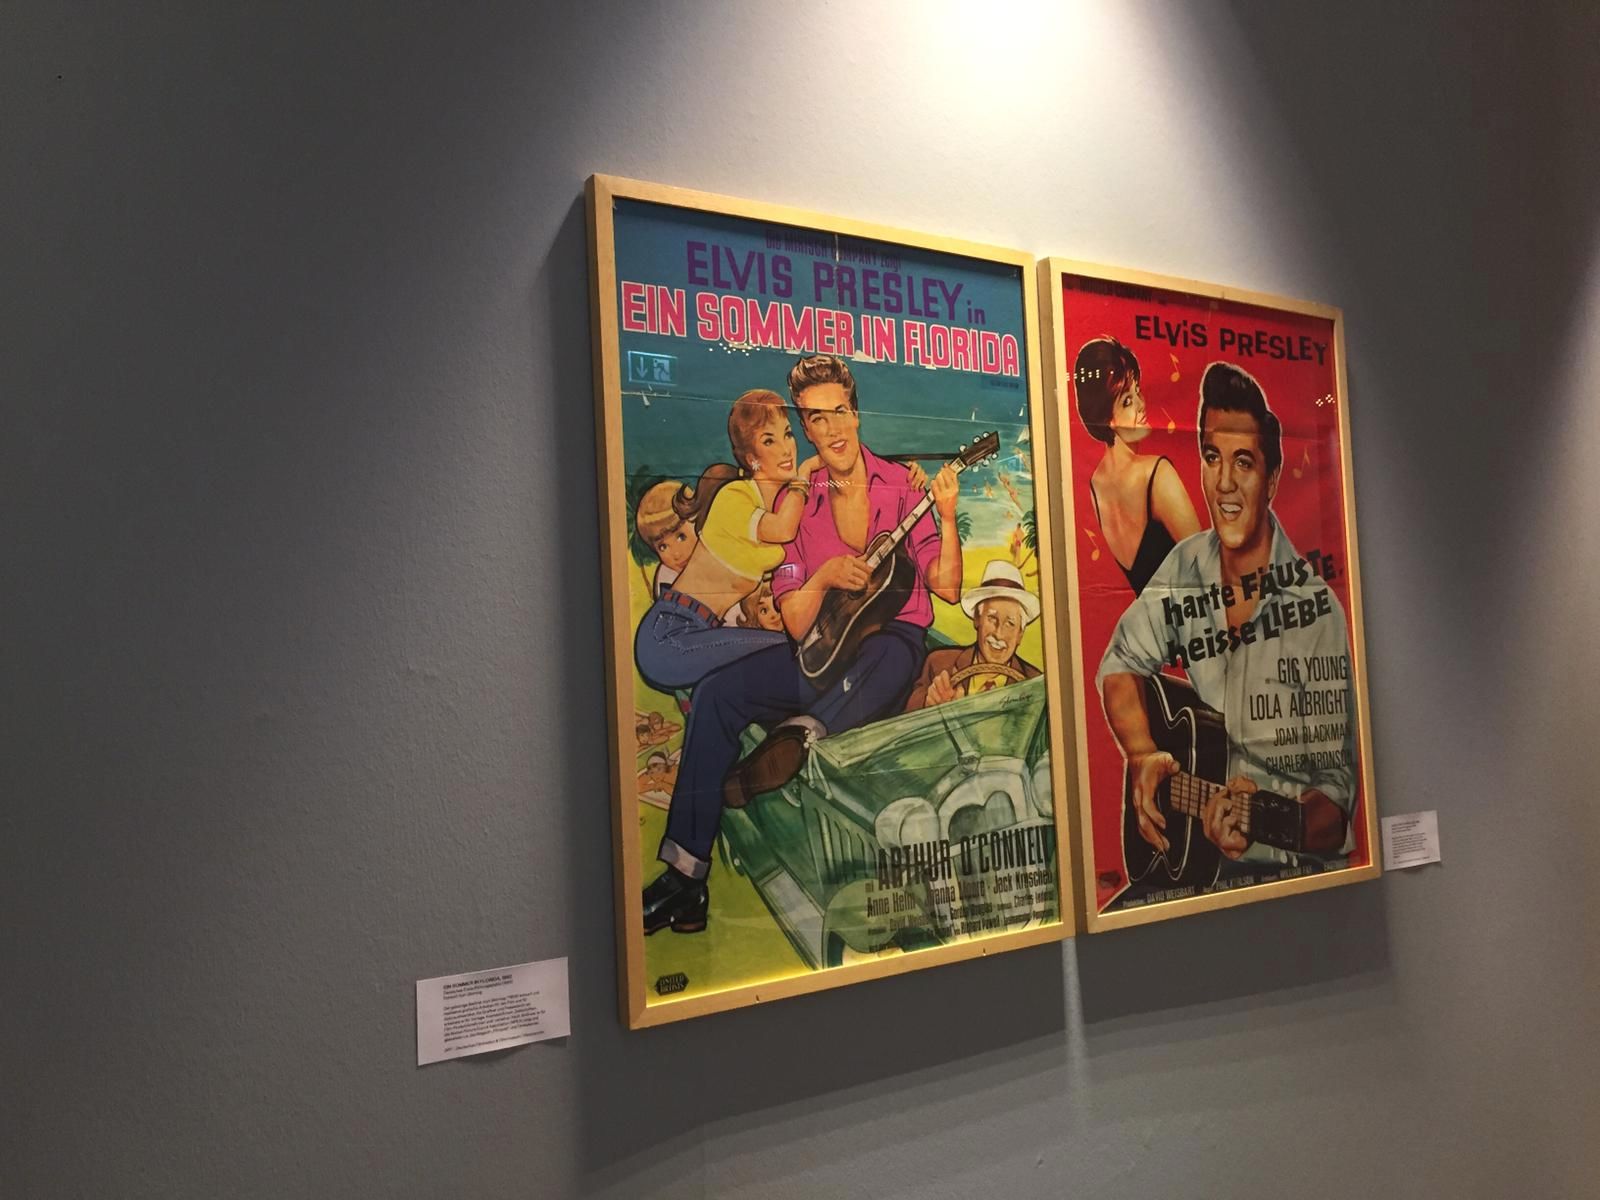 Blick in die Elvis-Ausstellung. Nebeneinander hängen zwei gelbe Bilderrahmen an einer grauen Wand. Beide zeigen Plakate zu Elvis.